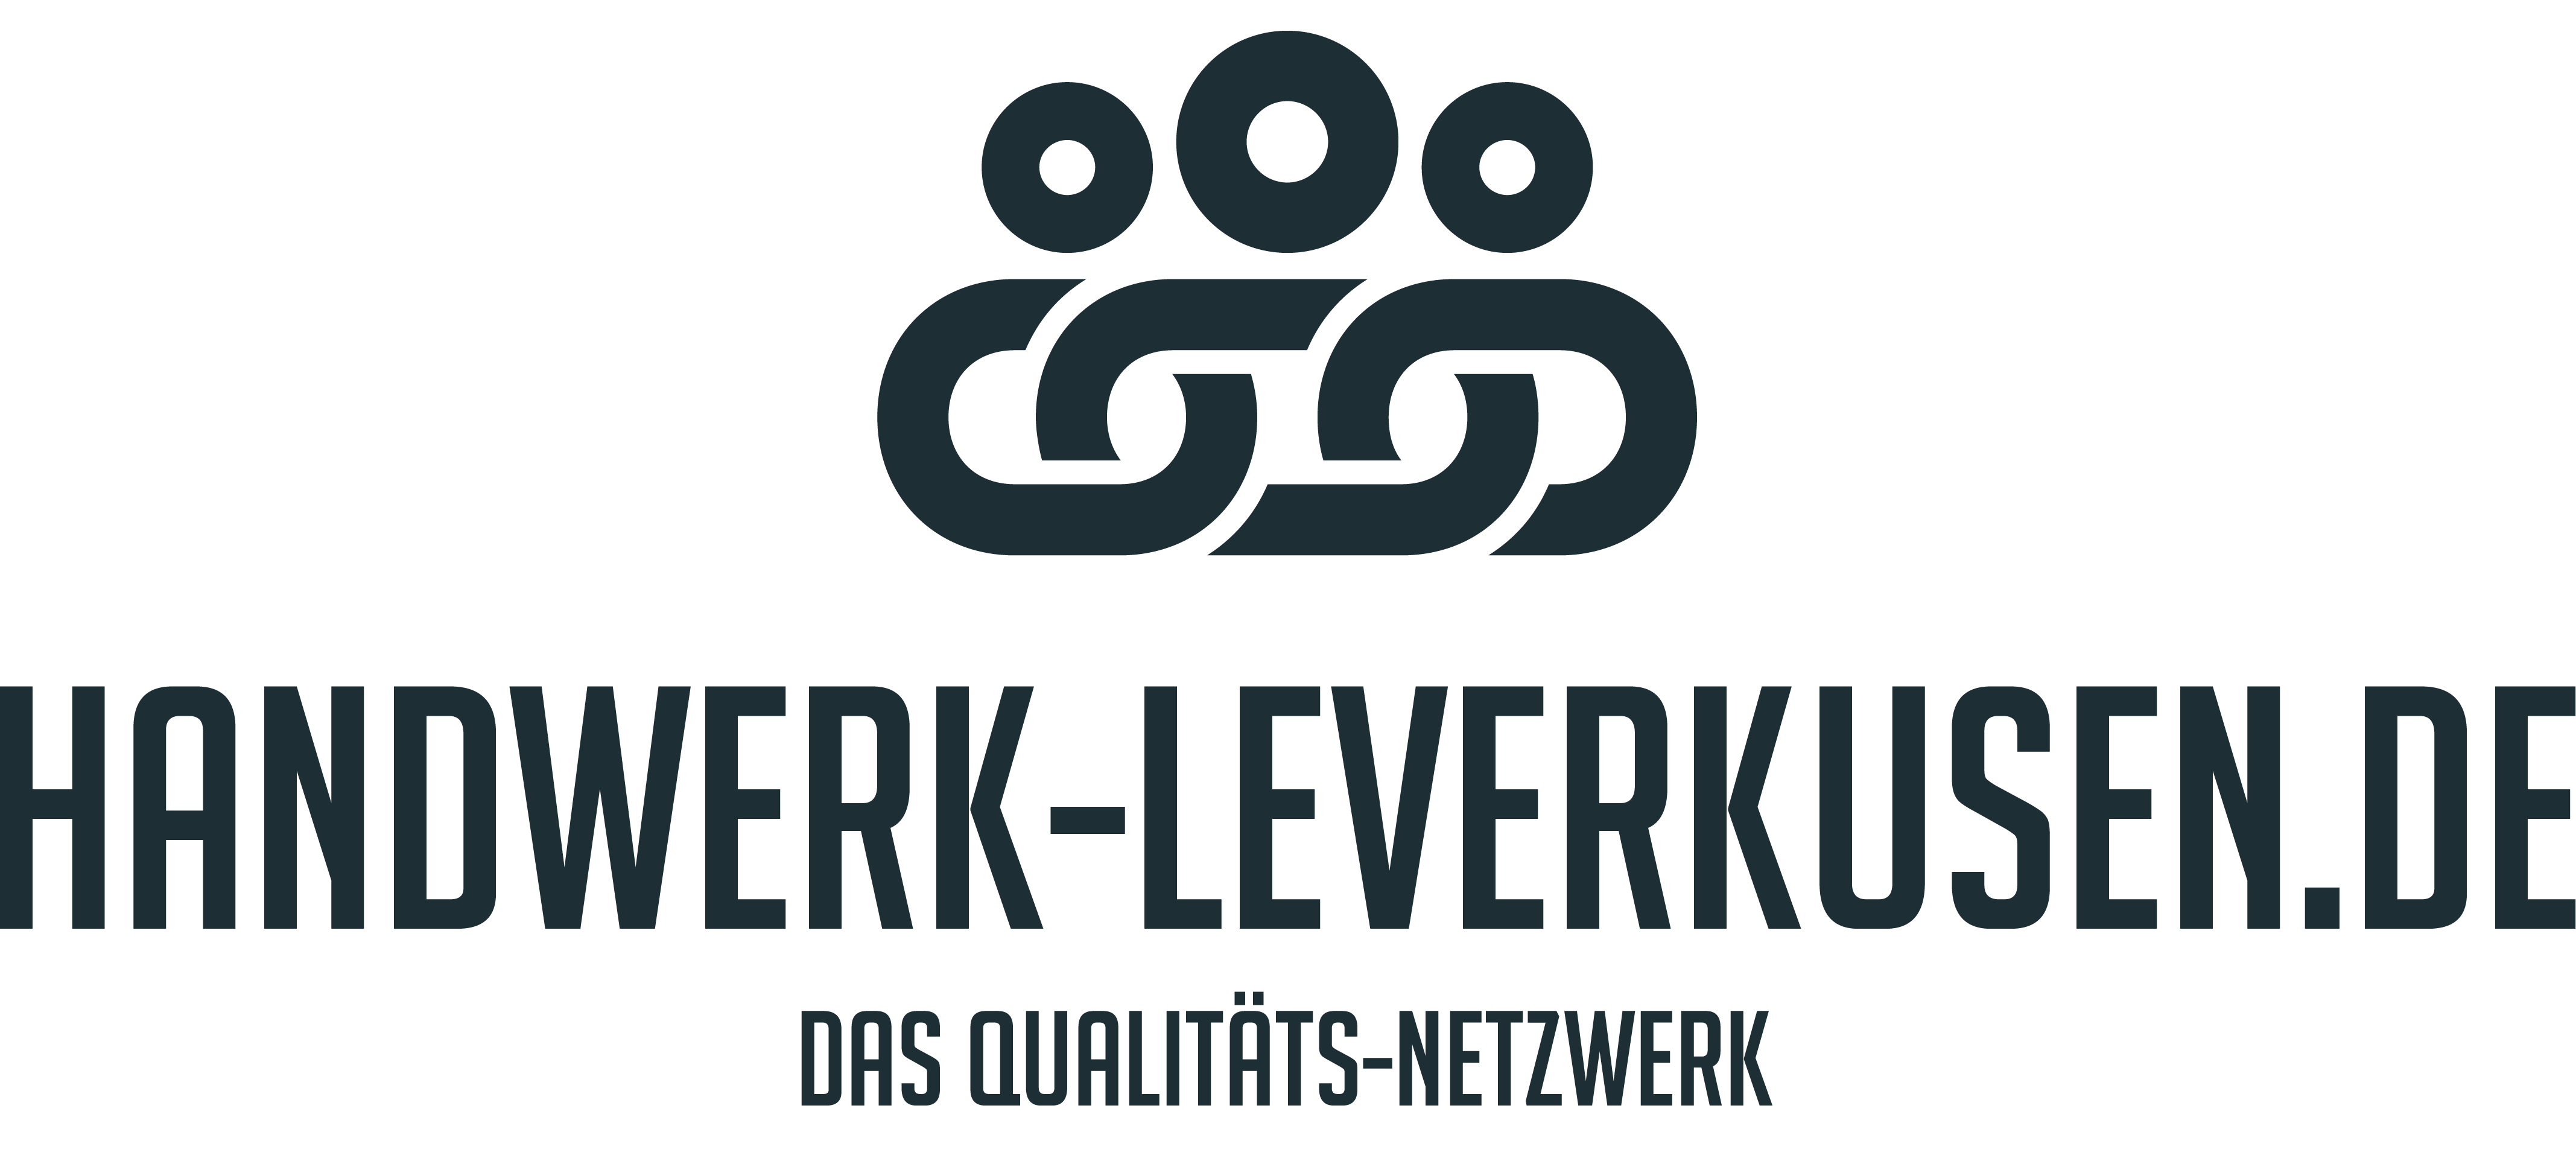 Handwerk Leverkusen - Das Qualitätsnetzwerk Logo